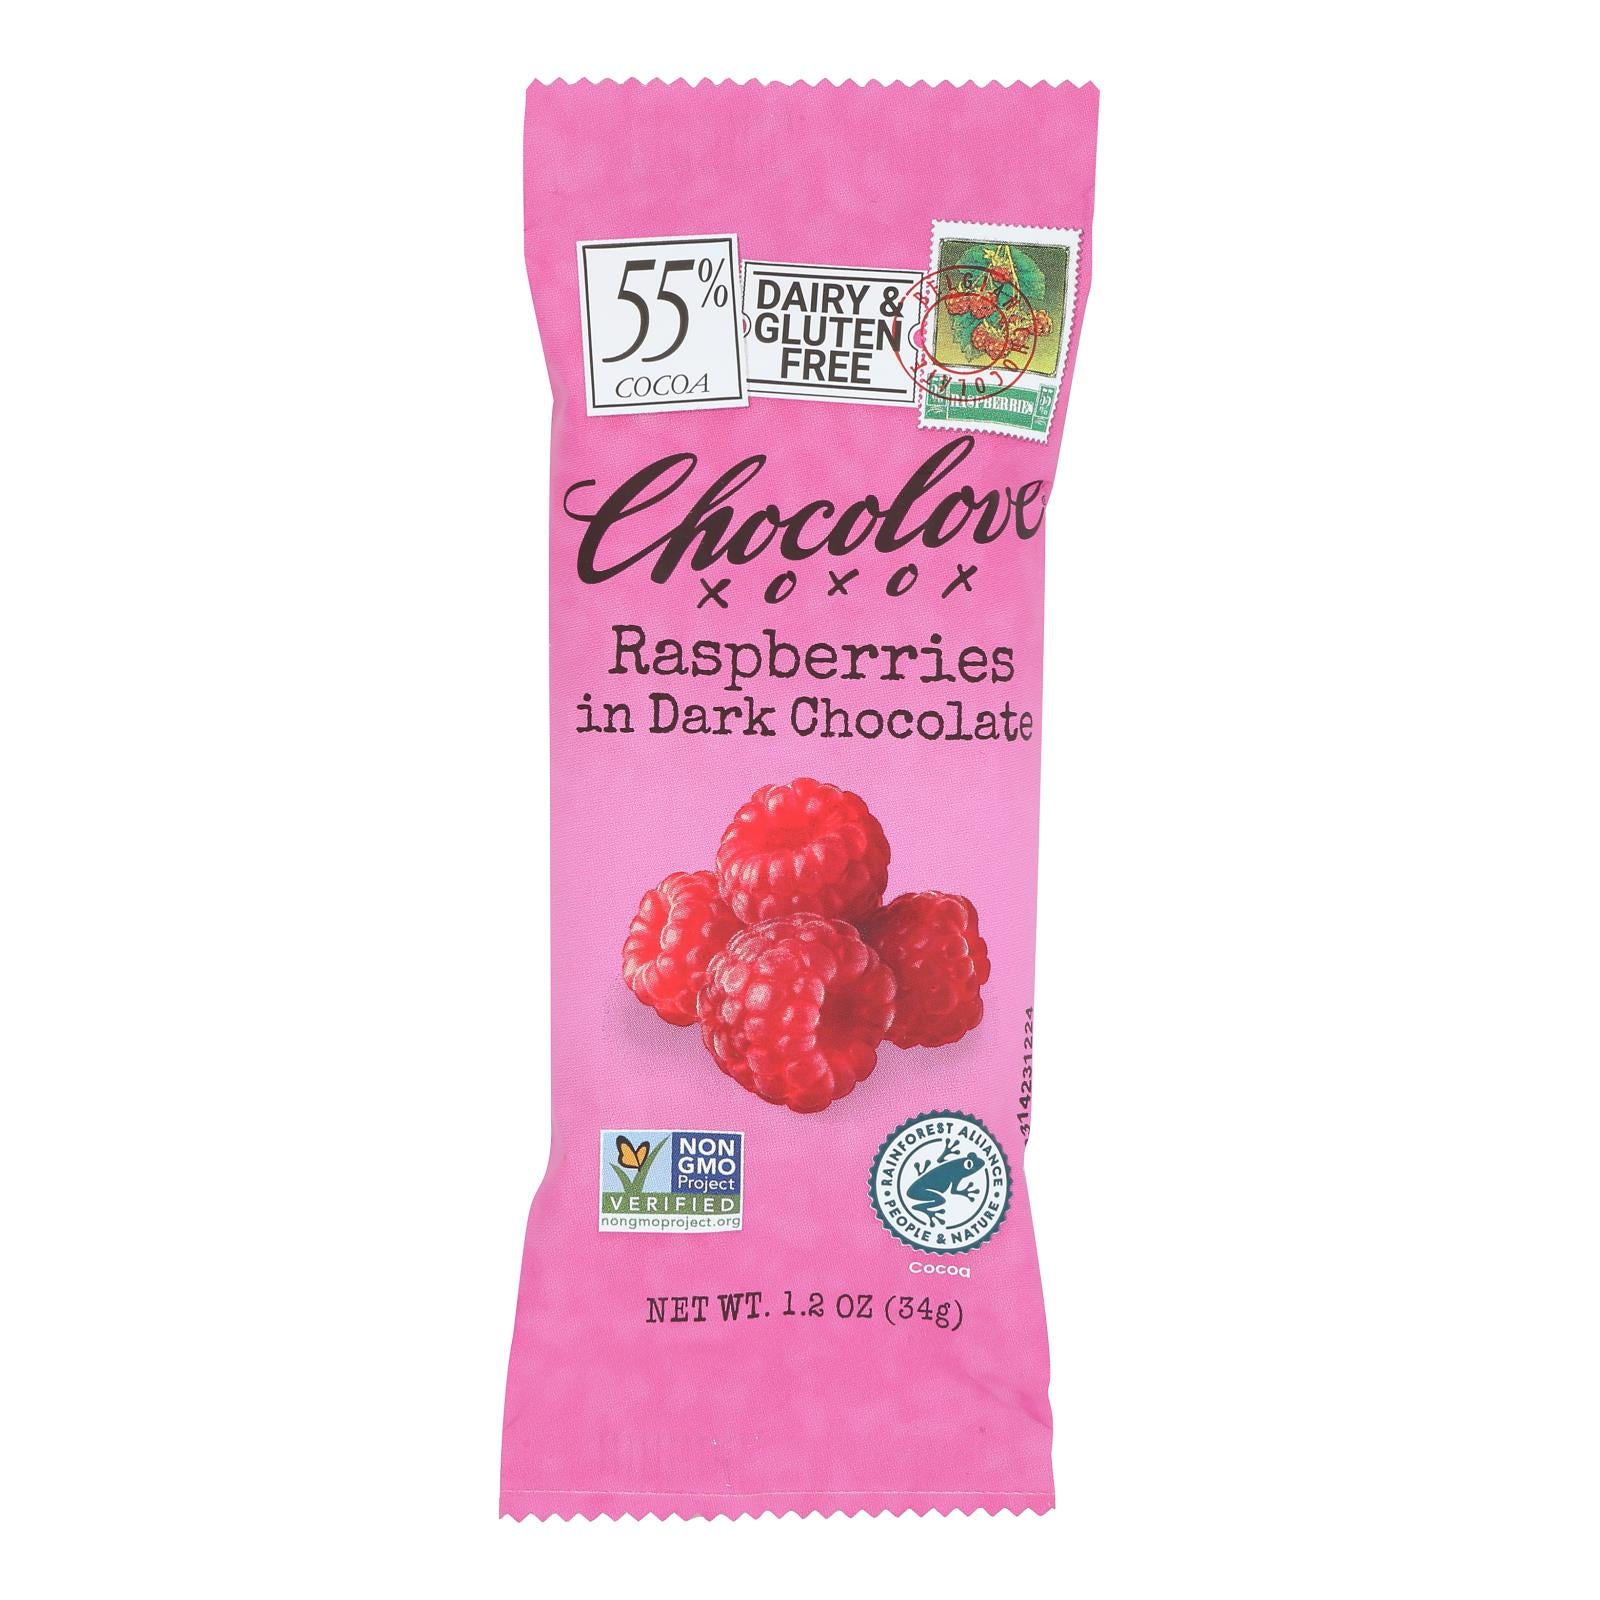 Chocolove Xoxox - Premium Chocolate Bar - Dark Chocolate - Raspberries - Mini - 1.2 oz Bars - Case of 12